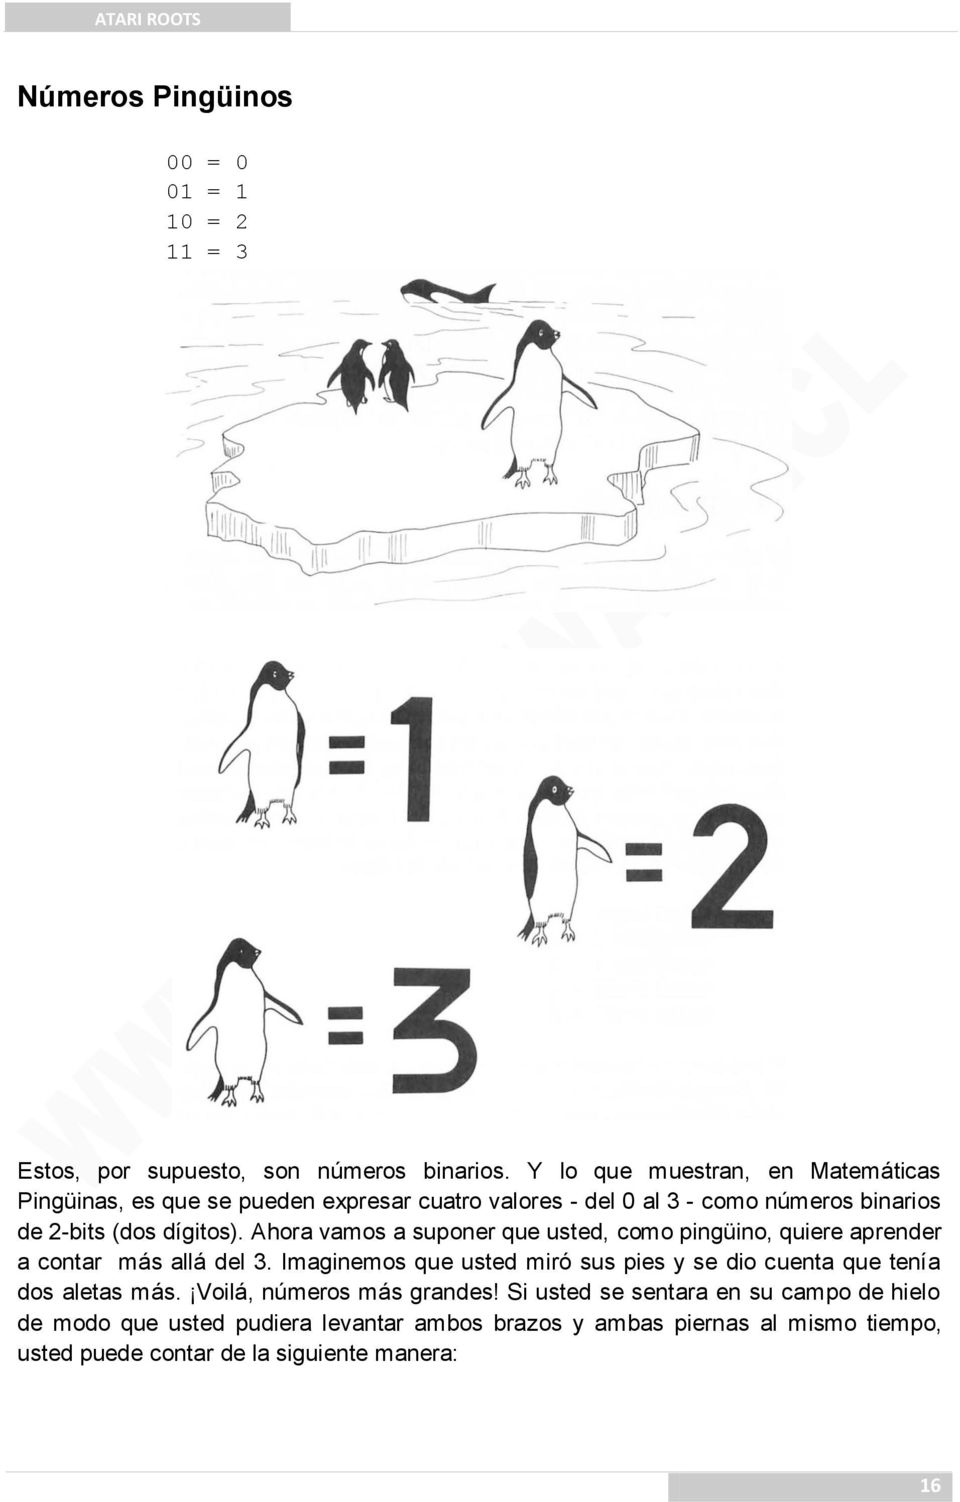 Ahora vamos a suponer que usted, como pingüino, quiere aprender a contar más allá del 3.